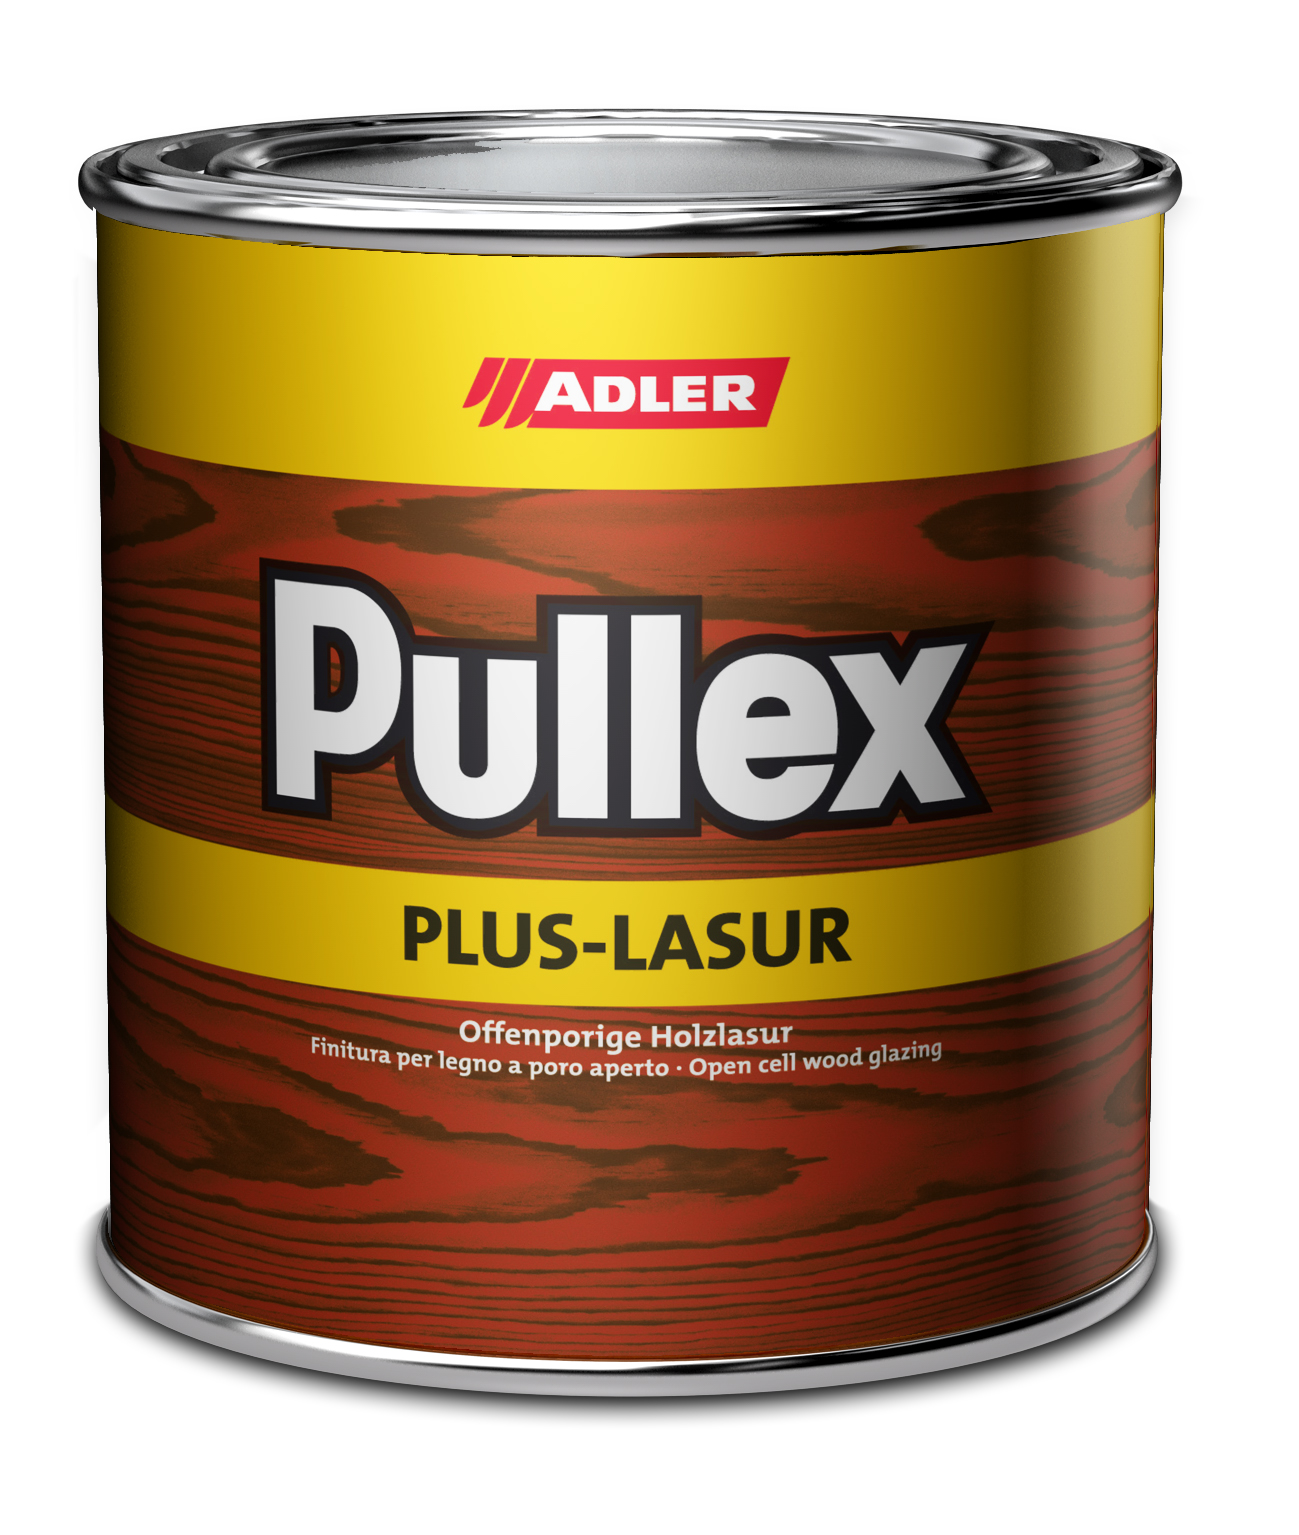 Adler Pullex Plus Lasur - UV ochranná lazúra na vonkajšie drevodomy a obloženie 2,5 l kastanie